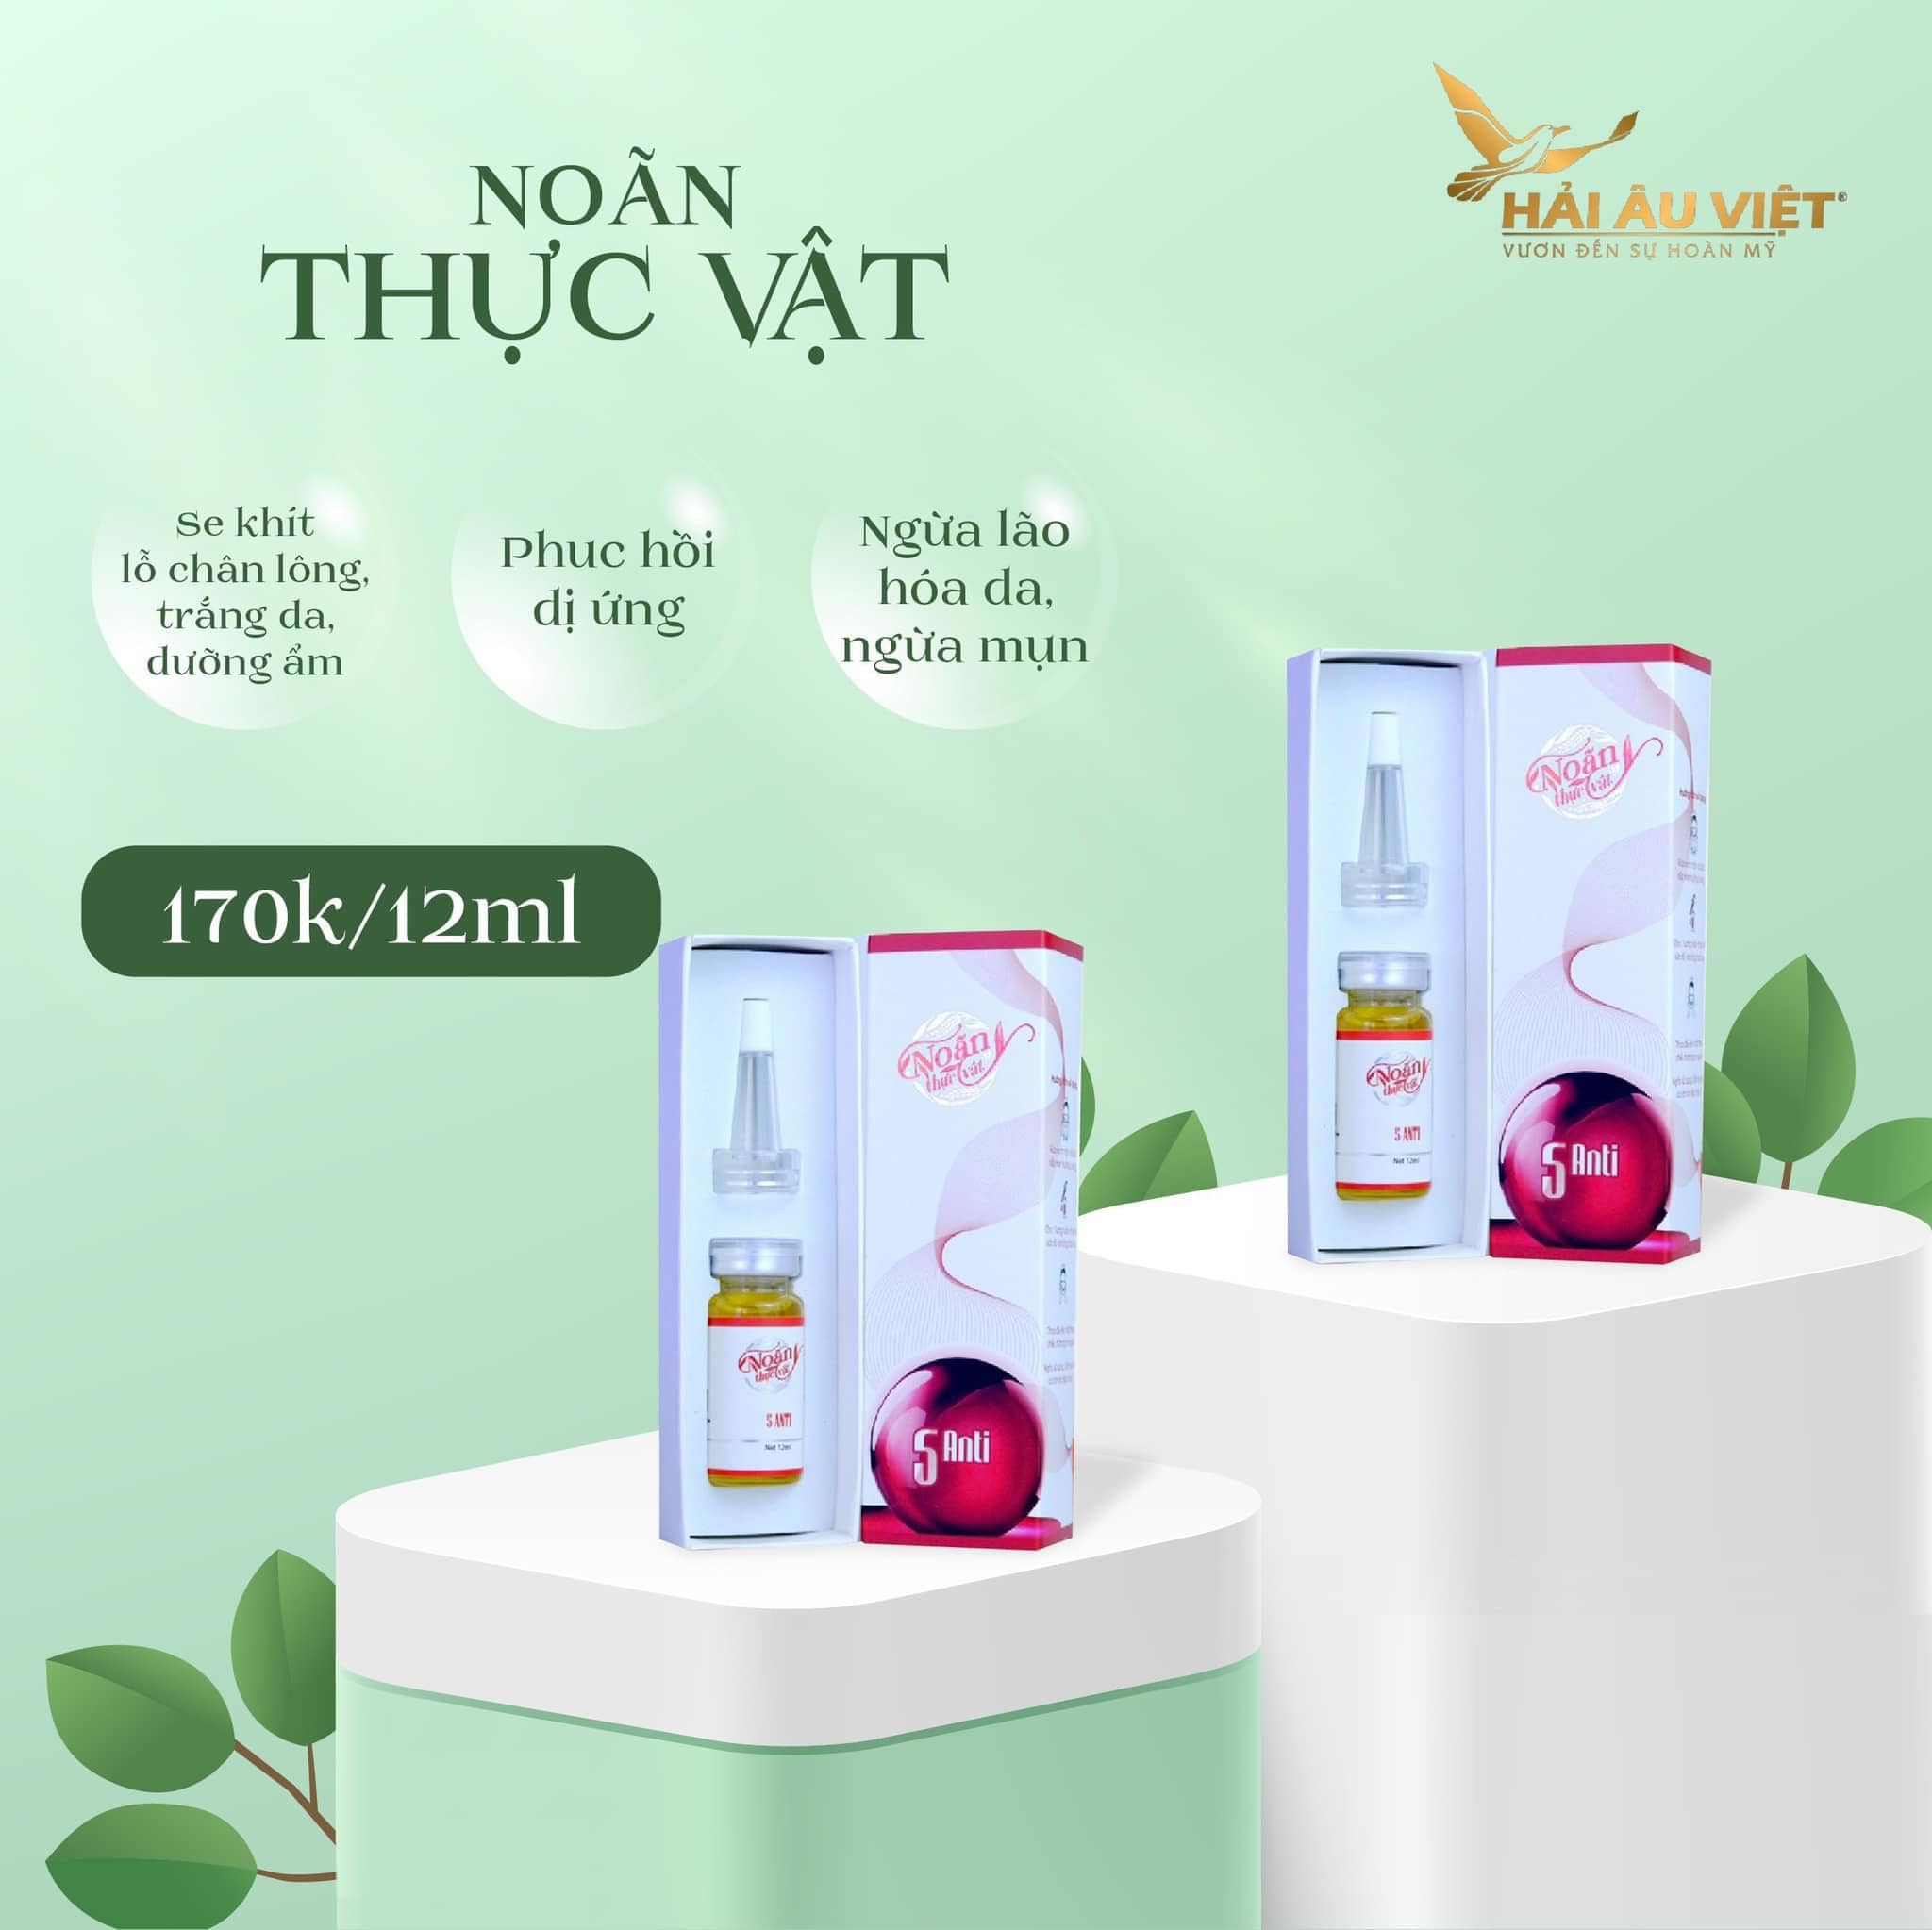 Serum Noãn Thực Vật Hải Âu Việt - 8936106220108